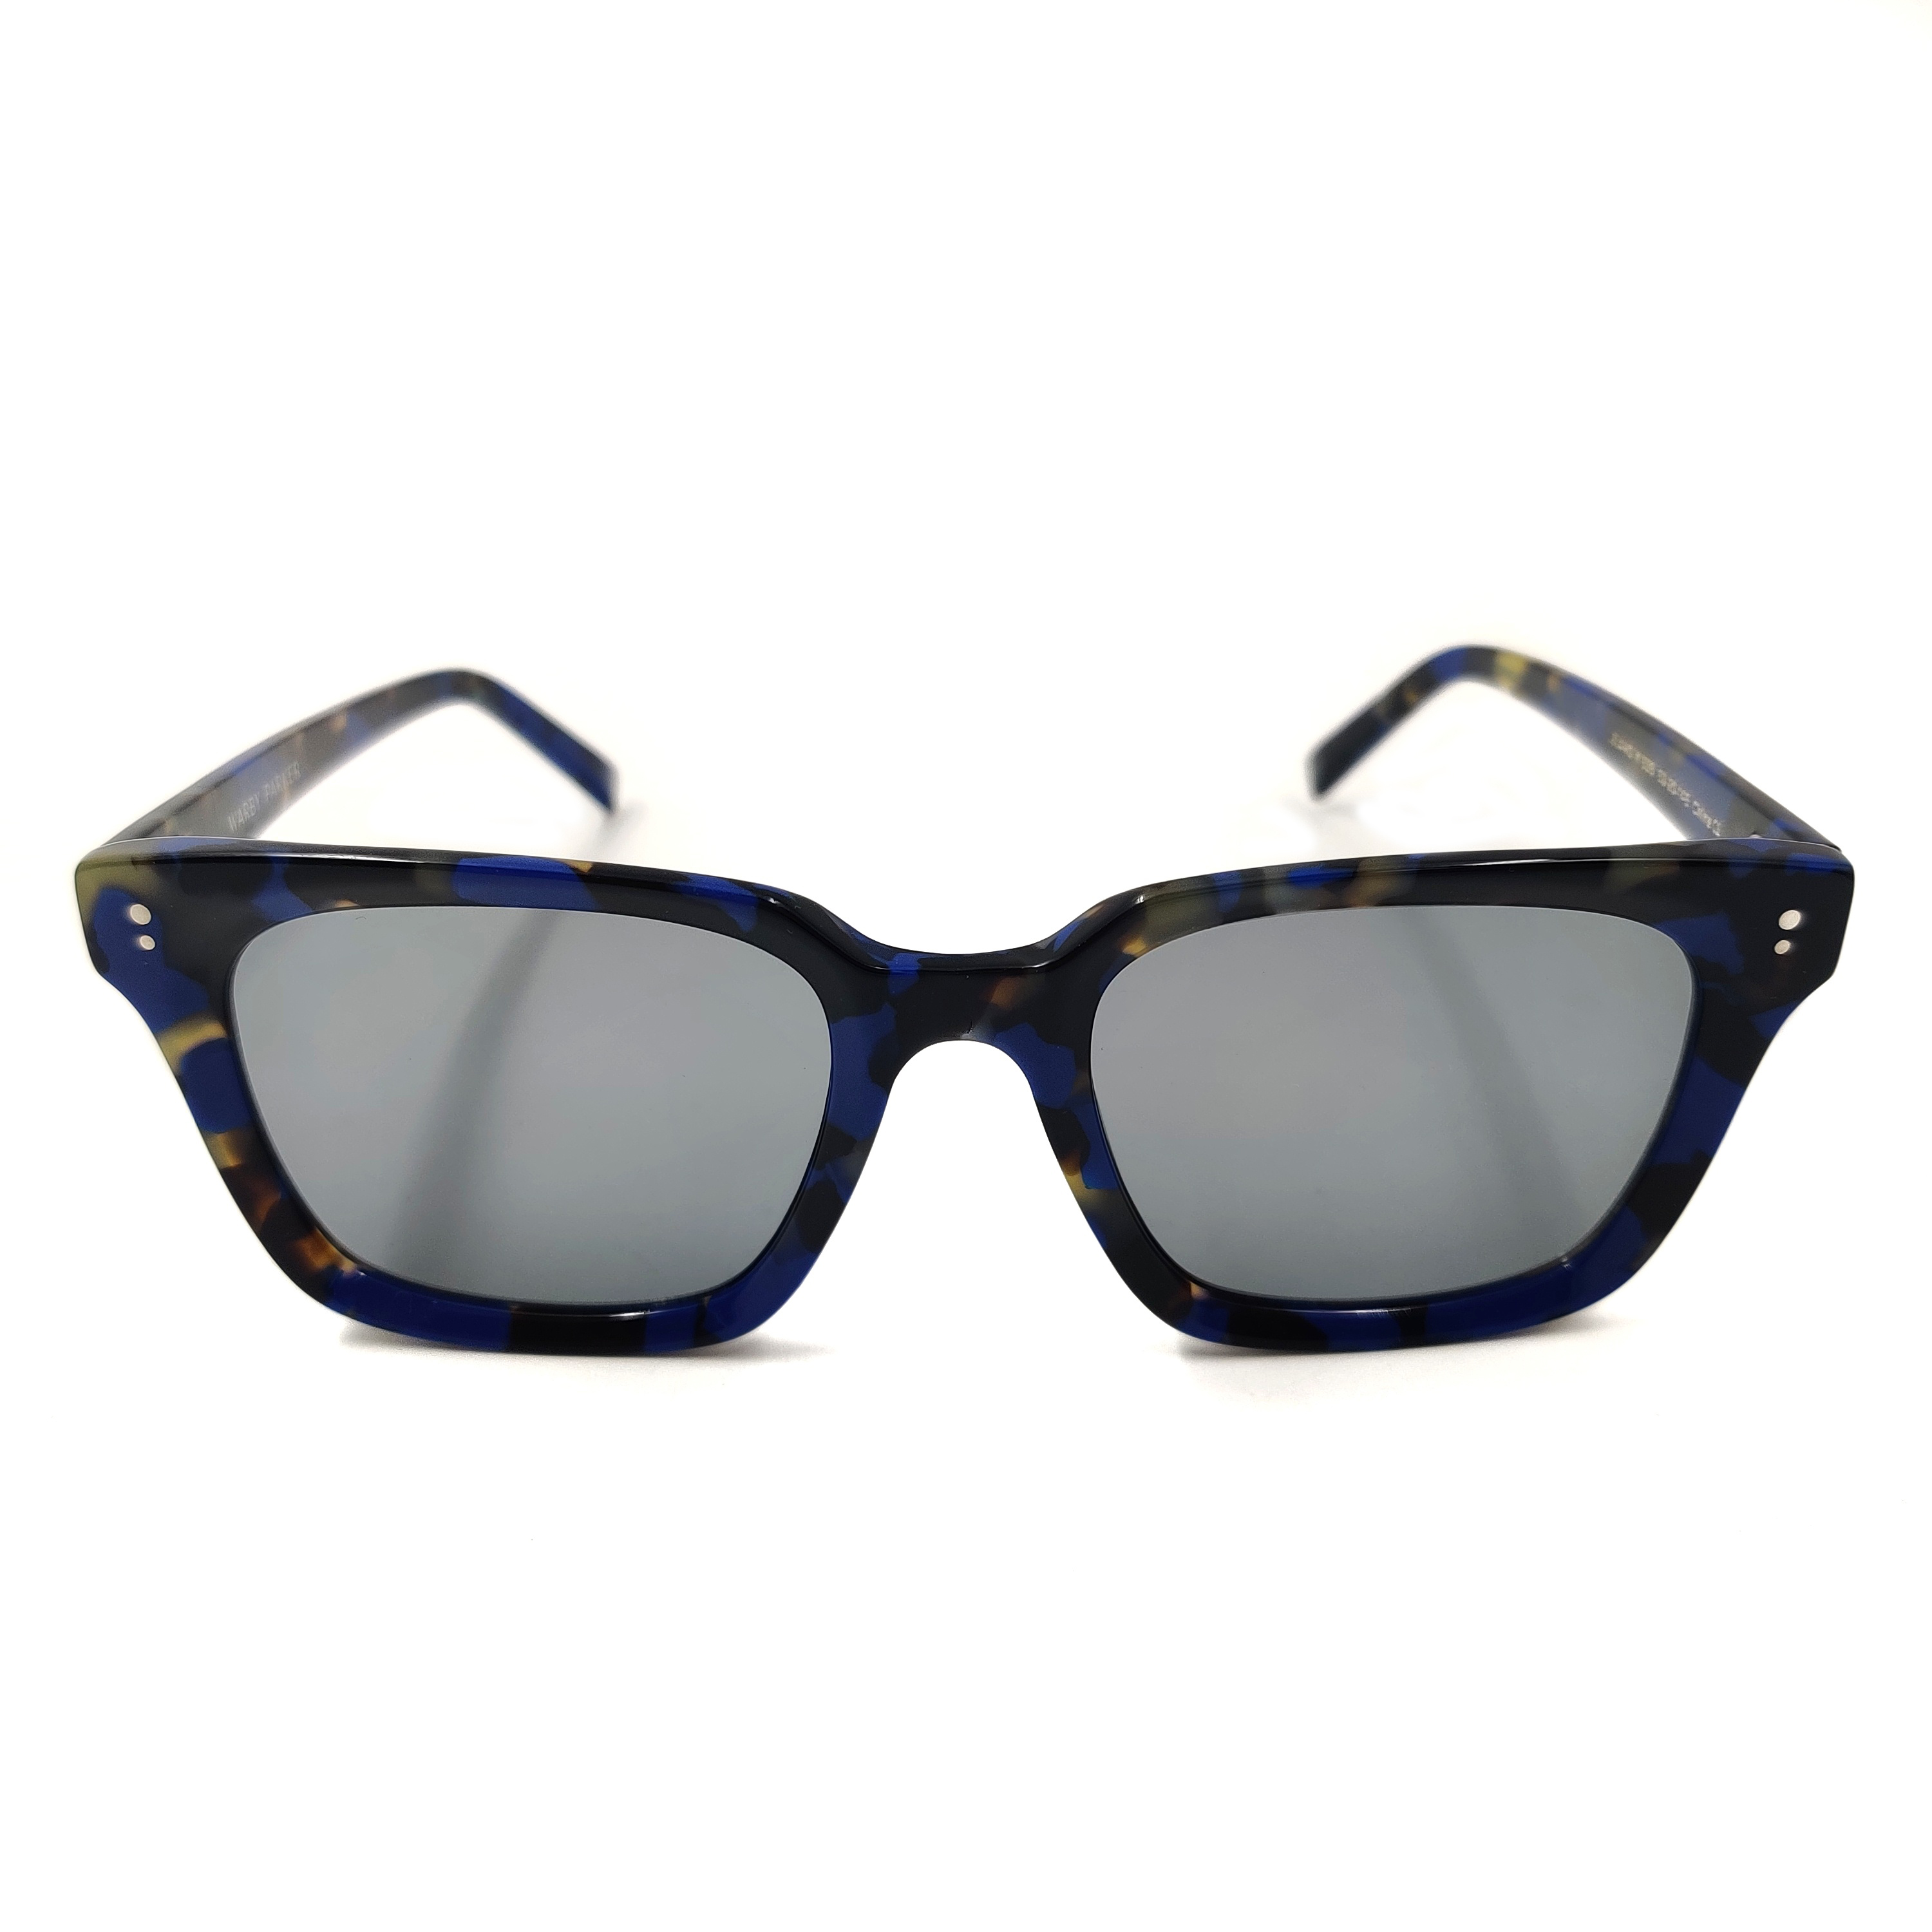 Gafas de sol River Squeezable Gafas de sol ligeras de ojo de gato Proveedores de gafas OEM